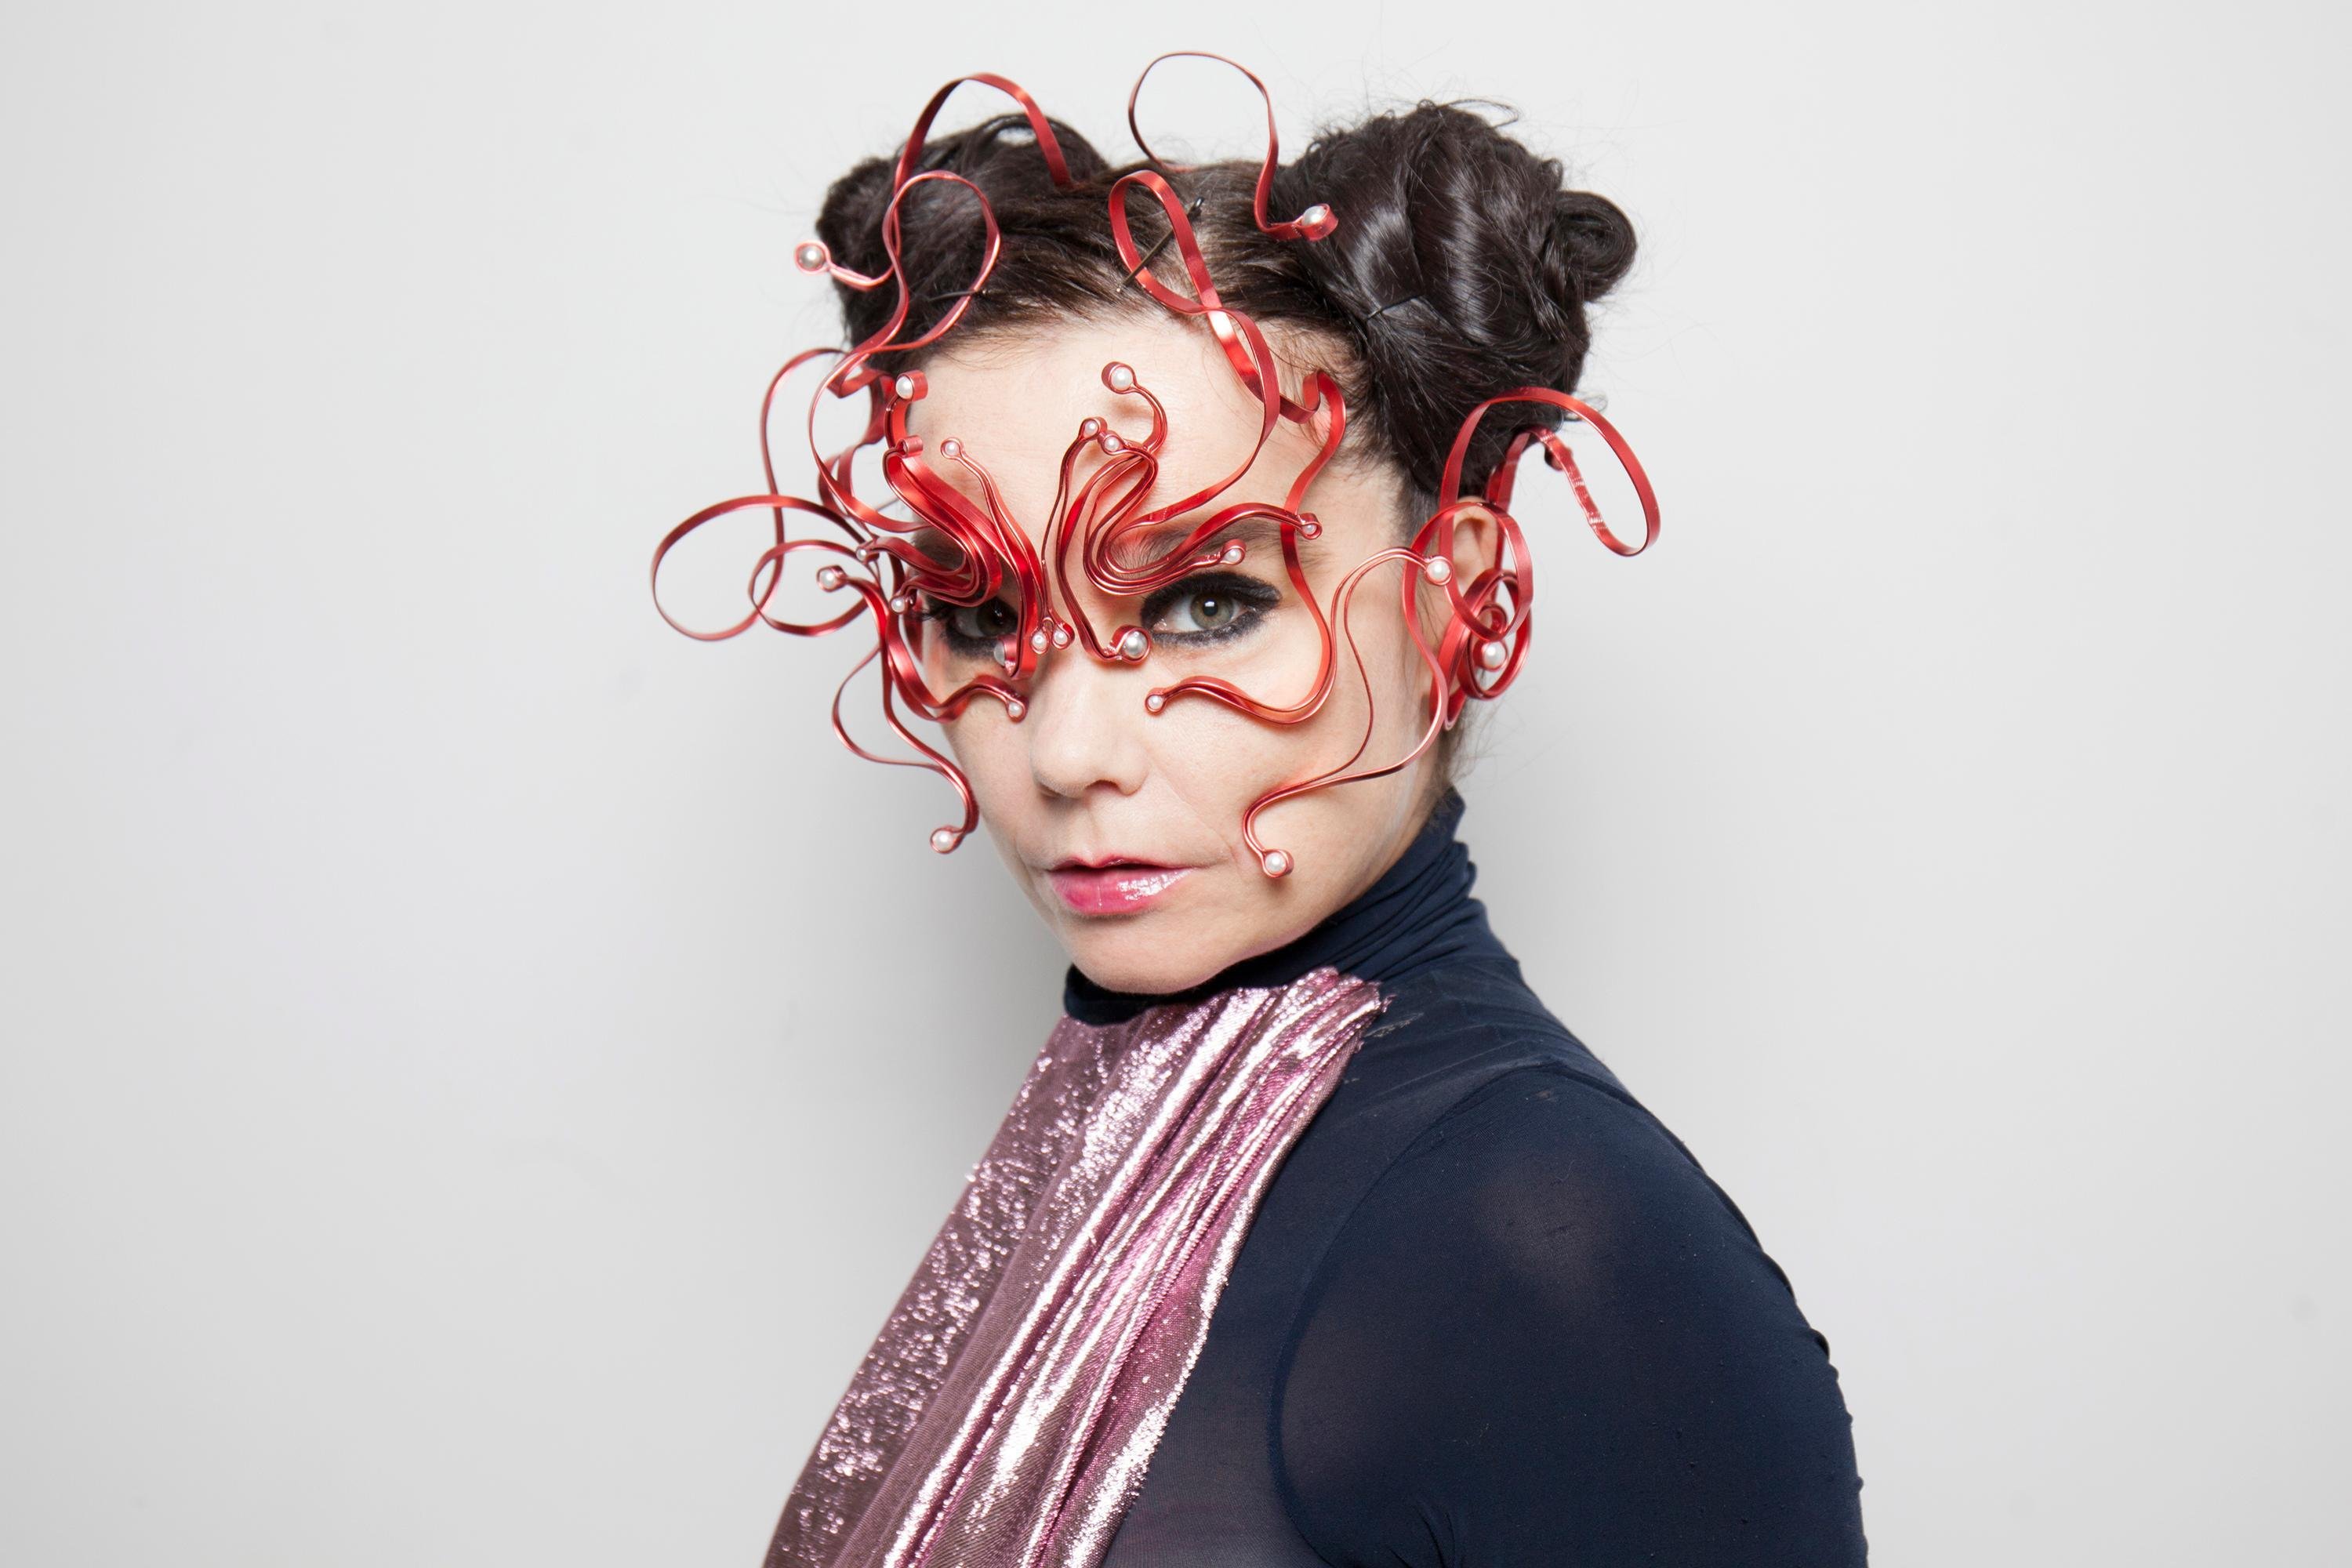 Vulnicura, Album yang Menggambarkan Perjalanan Patah Hati ala Björk